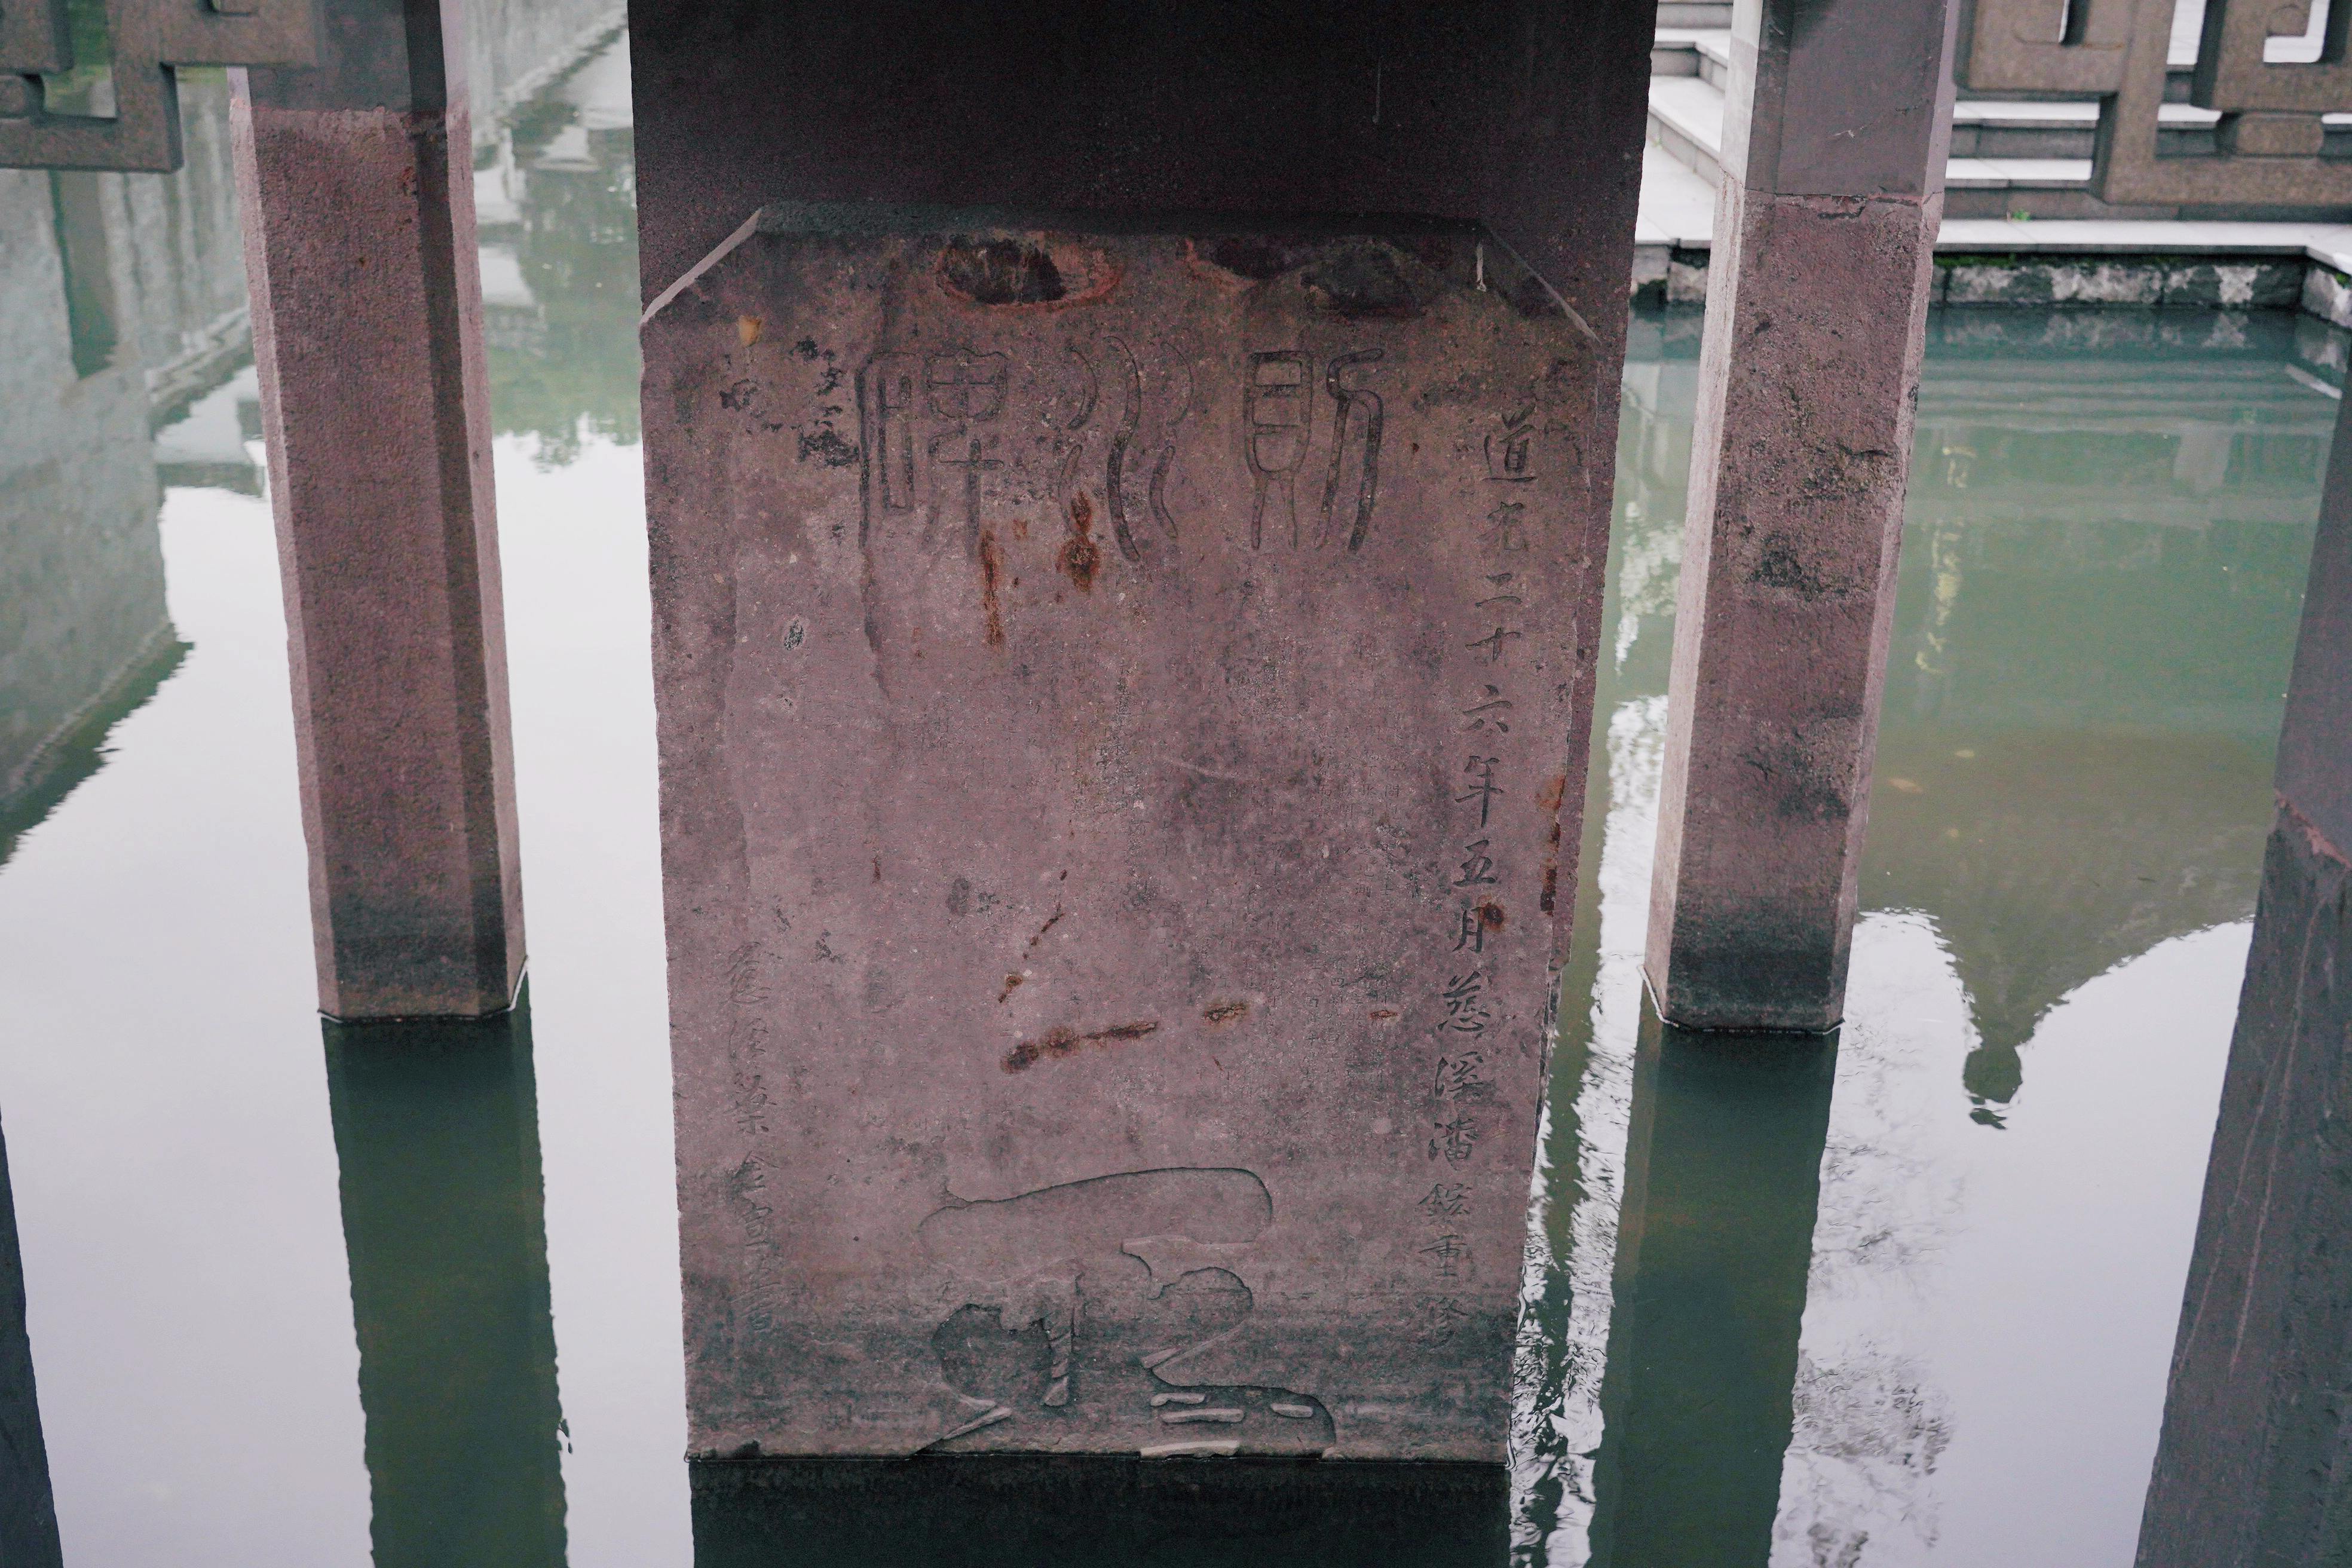 原来这亭子叫做水则亭,而里面的石碑就是水则碑,这是当时用于监测月湖